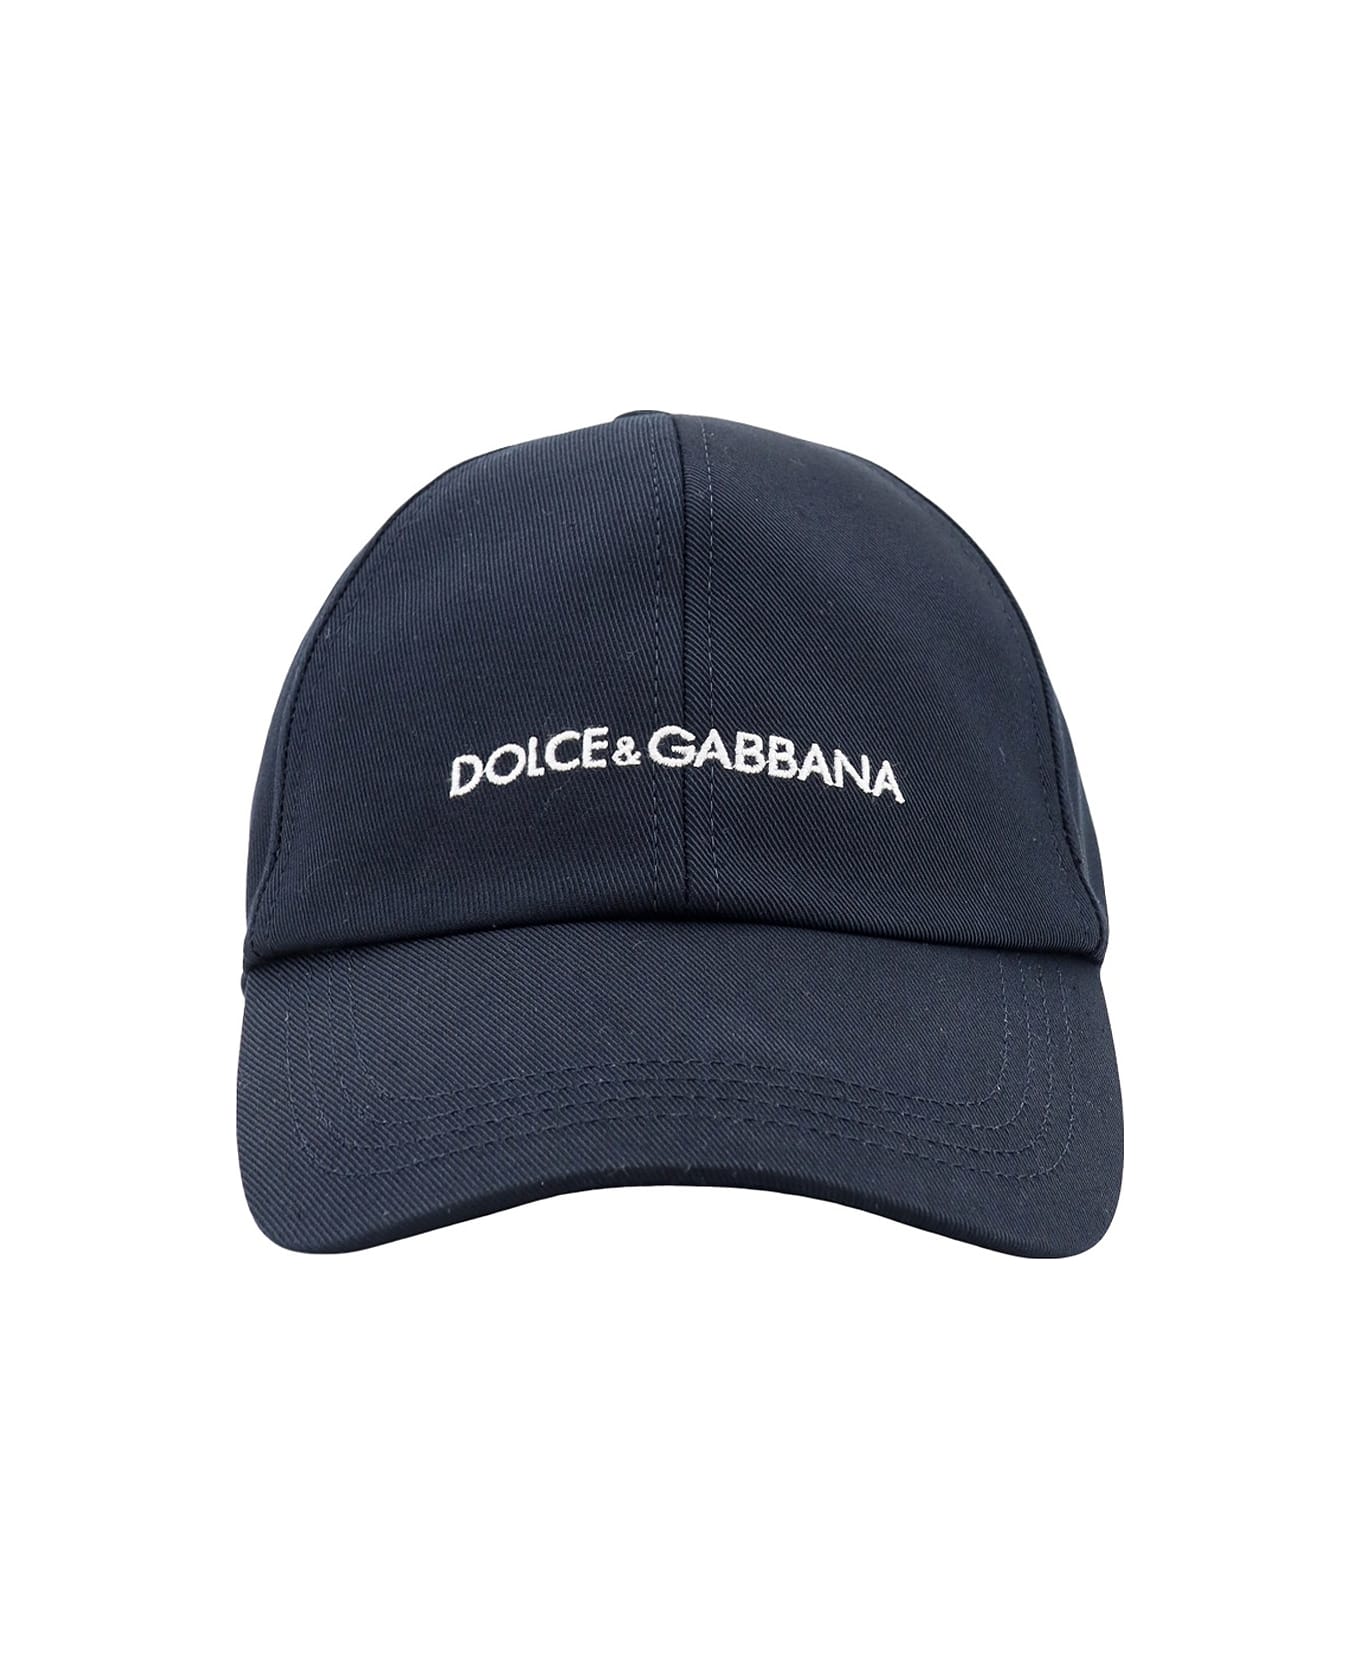 Dolce & Gabbana Hat - BLUE